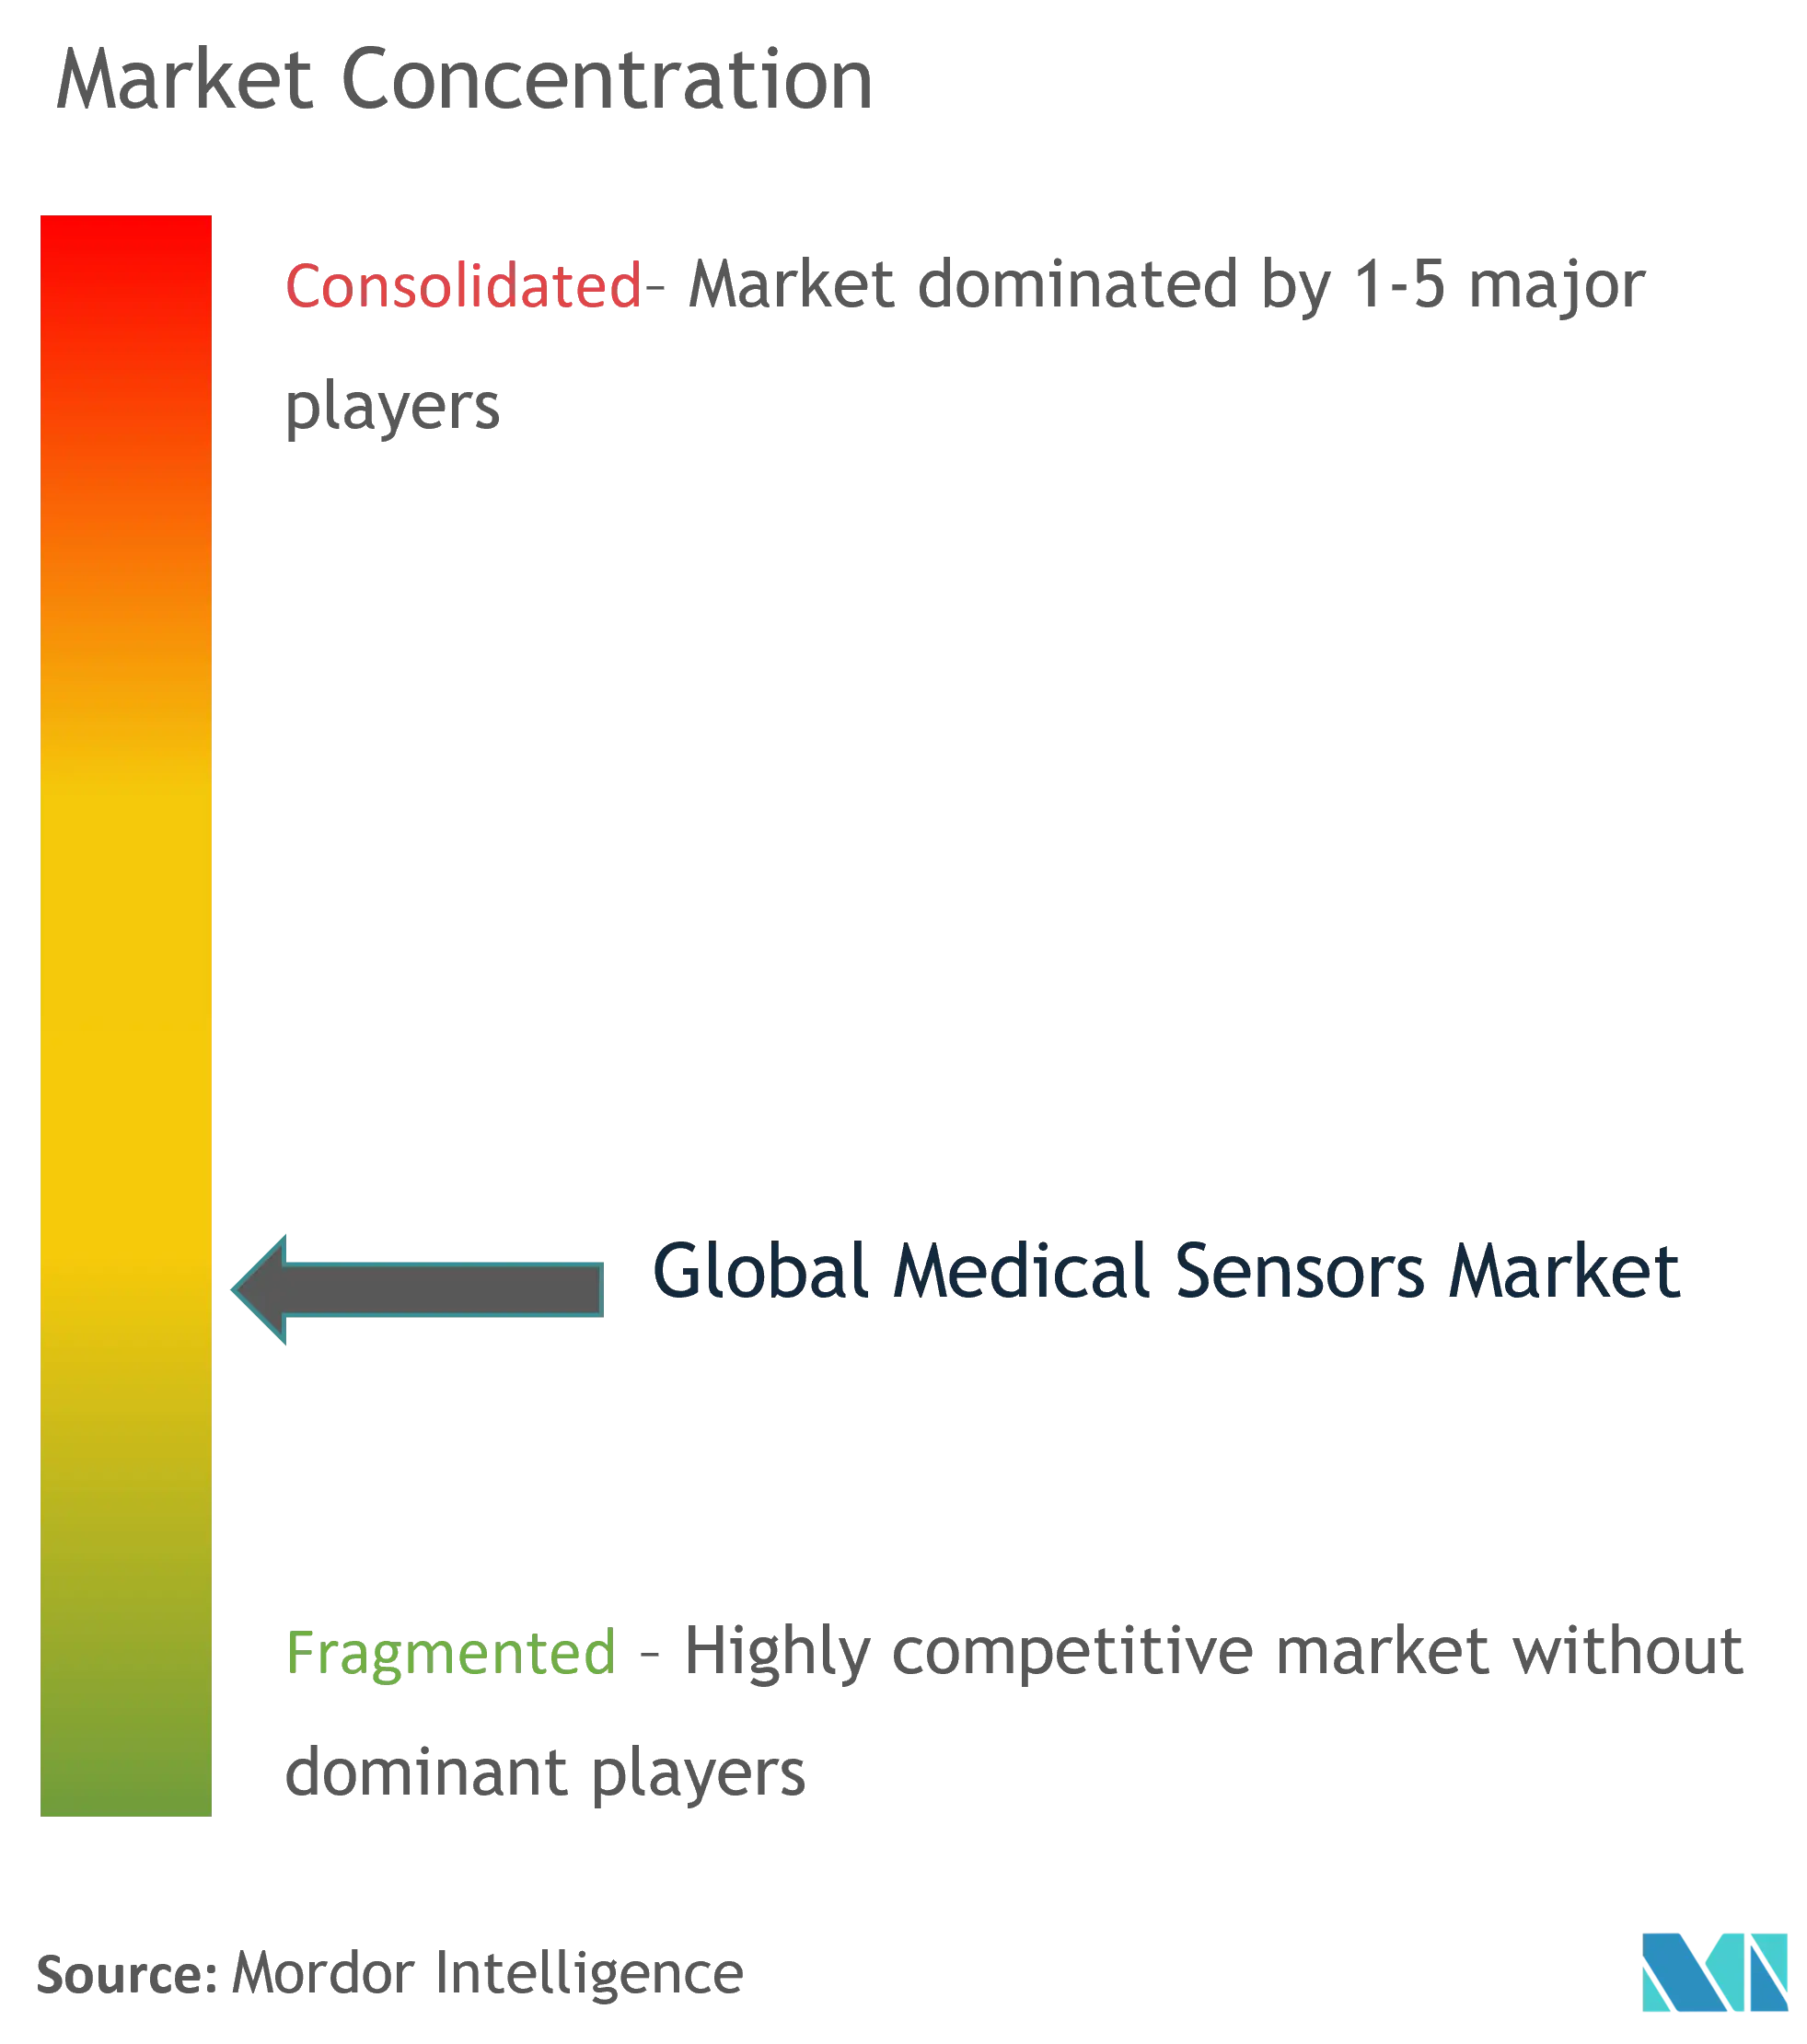 Medical Sensor Market Concentration